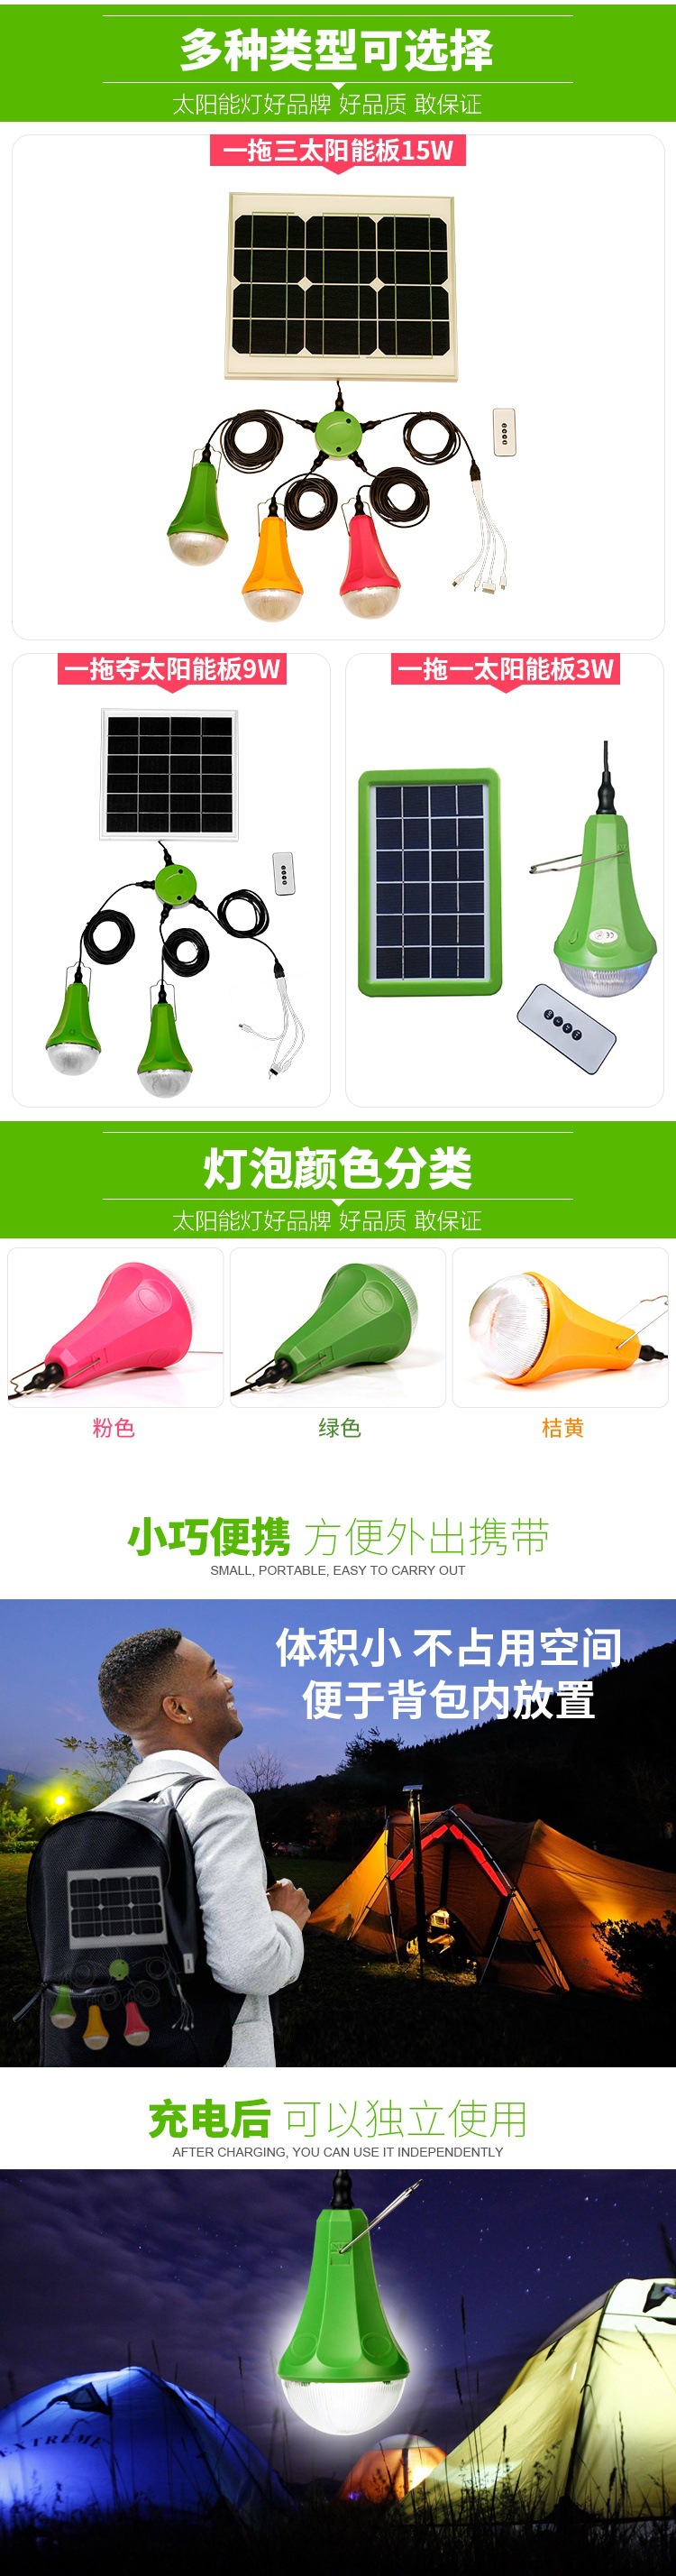 新疆厂家直销一拖二6瓦太阳能灯 锂电池充电小夜灯家用应急照明灯示例图11